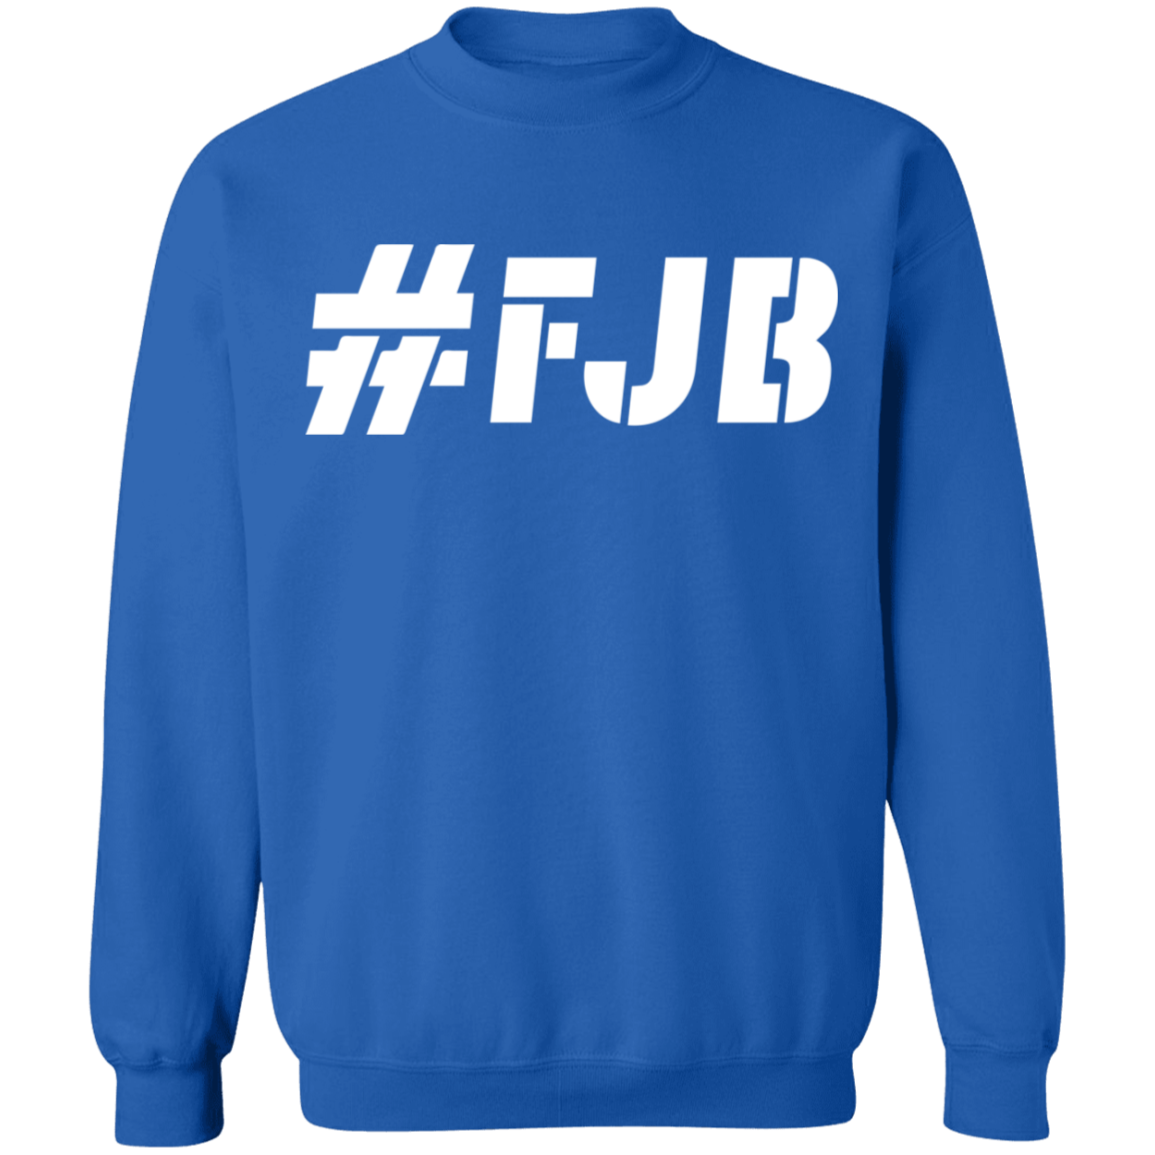 #FJB Sweater